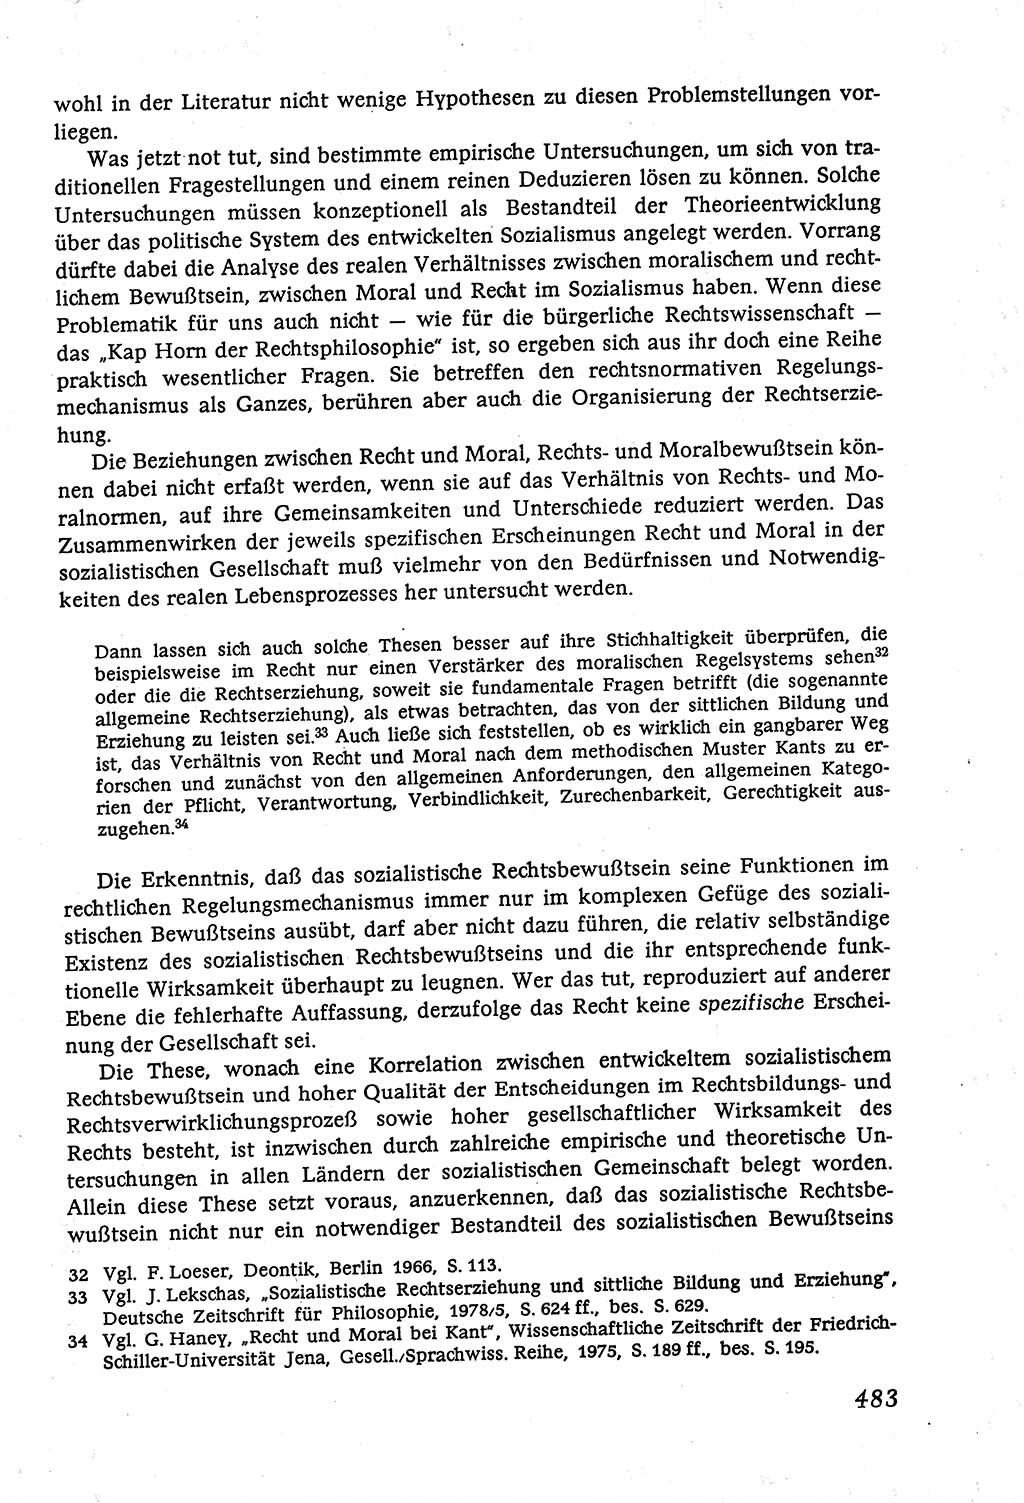 Marxistisch-leninistische (ML) Staats- und Rechtstheorie [Deutsche Demokratische Republik (DDR)], Lehrbuch 1980, Seite 483 (ML St.-R.-Th. DDR Lb. 1980, S. 483)